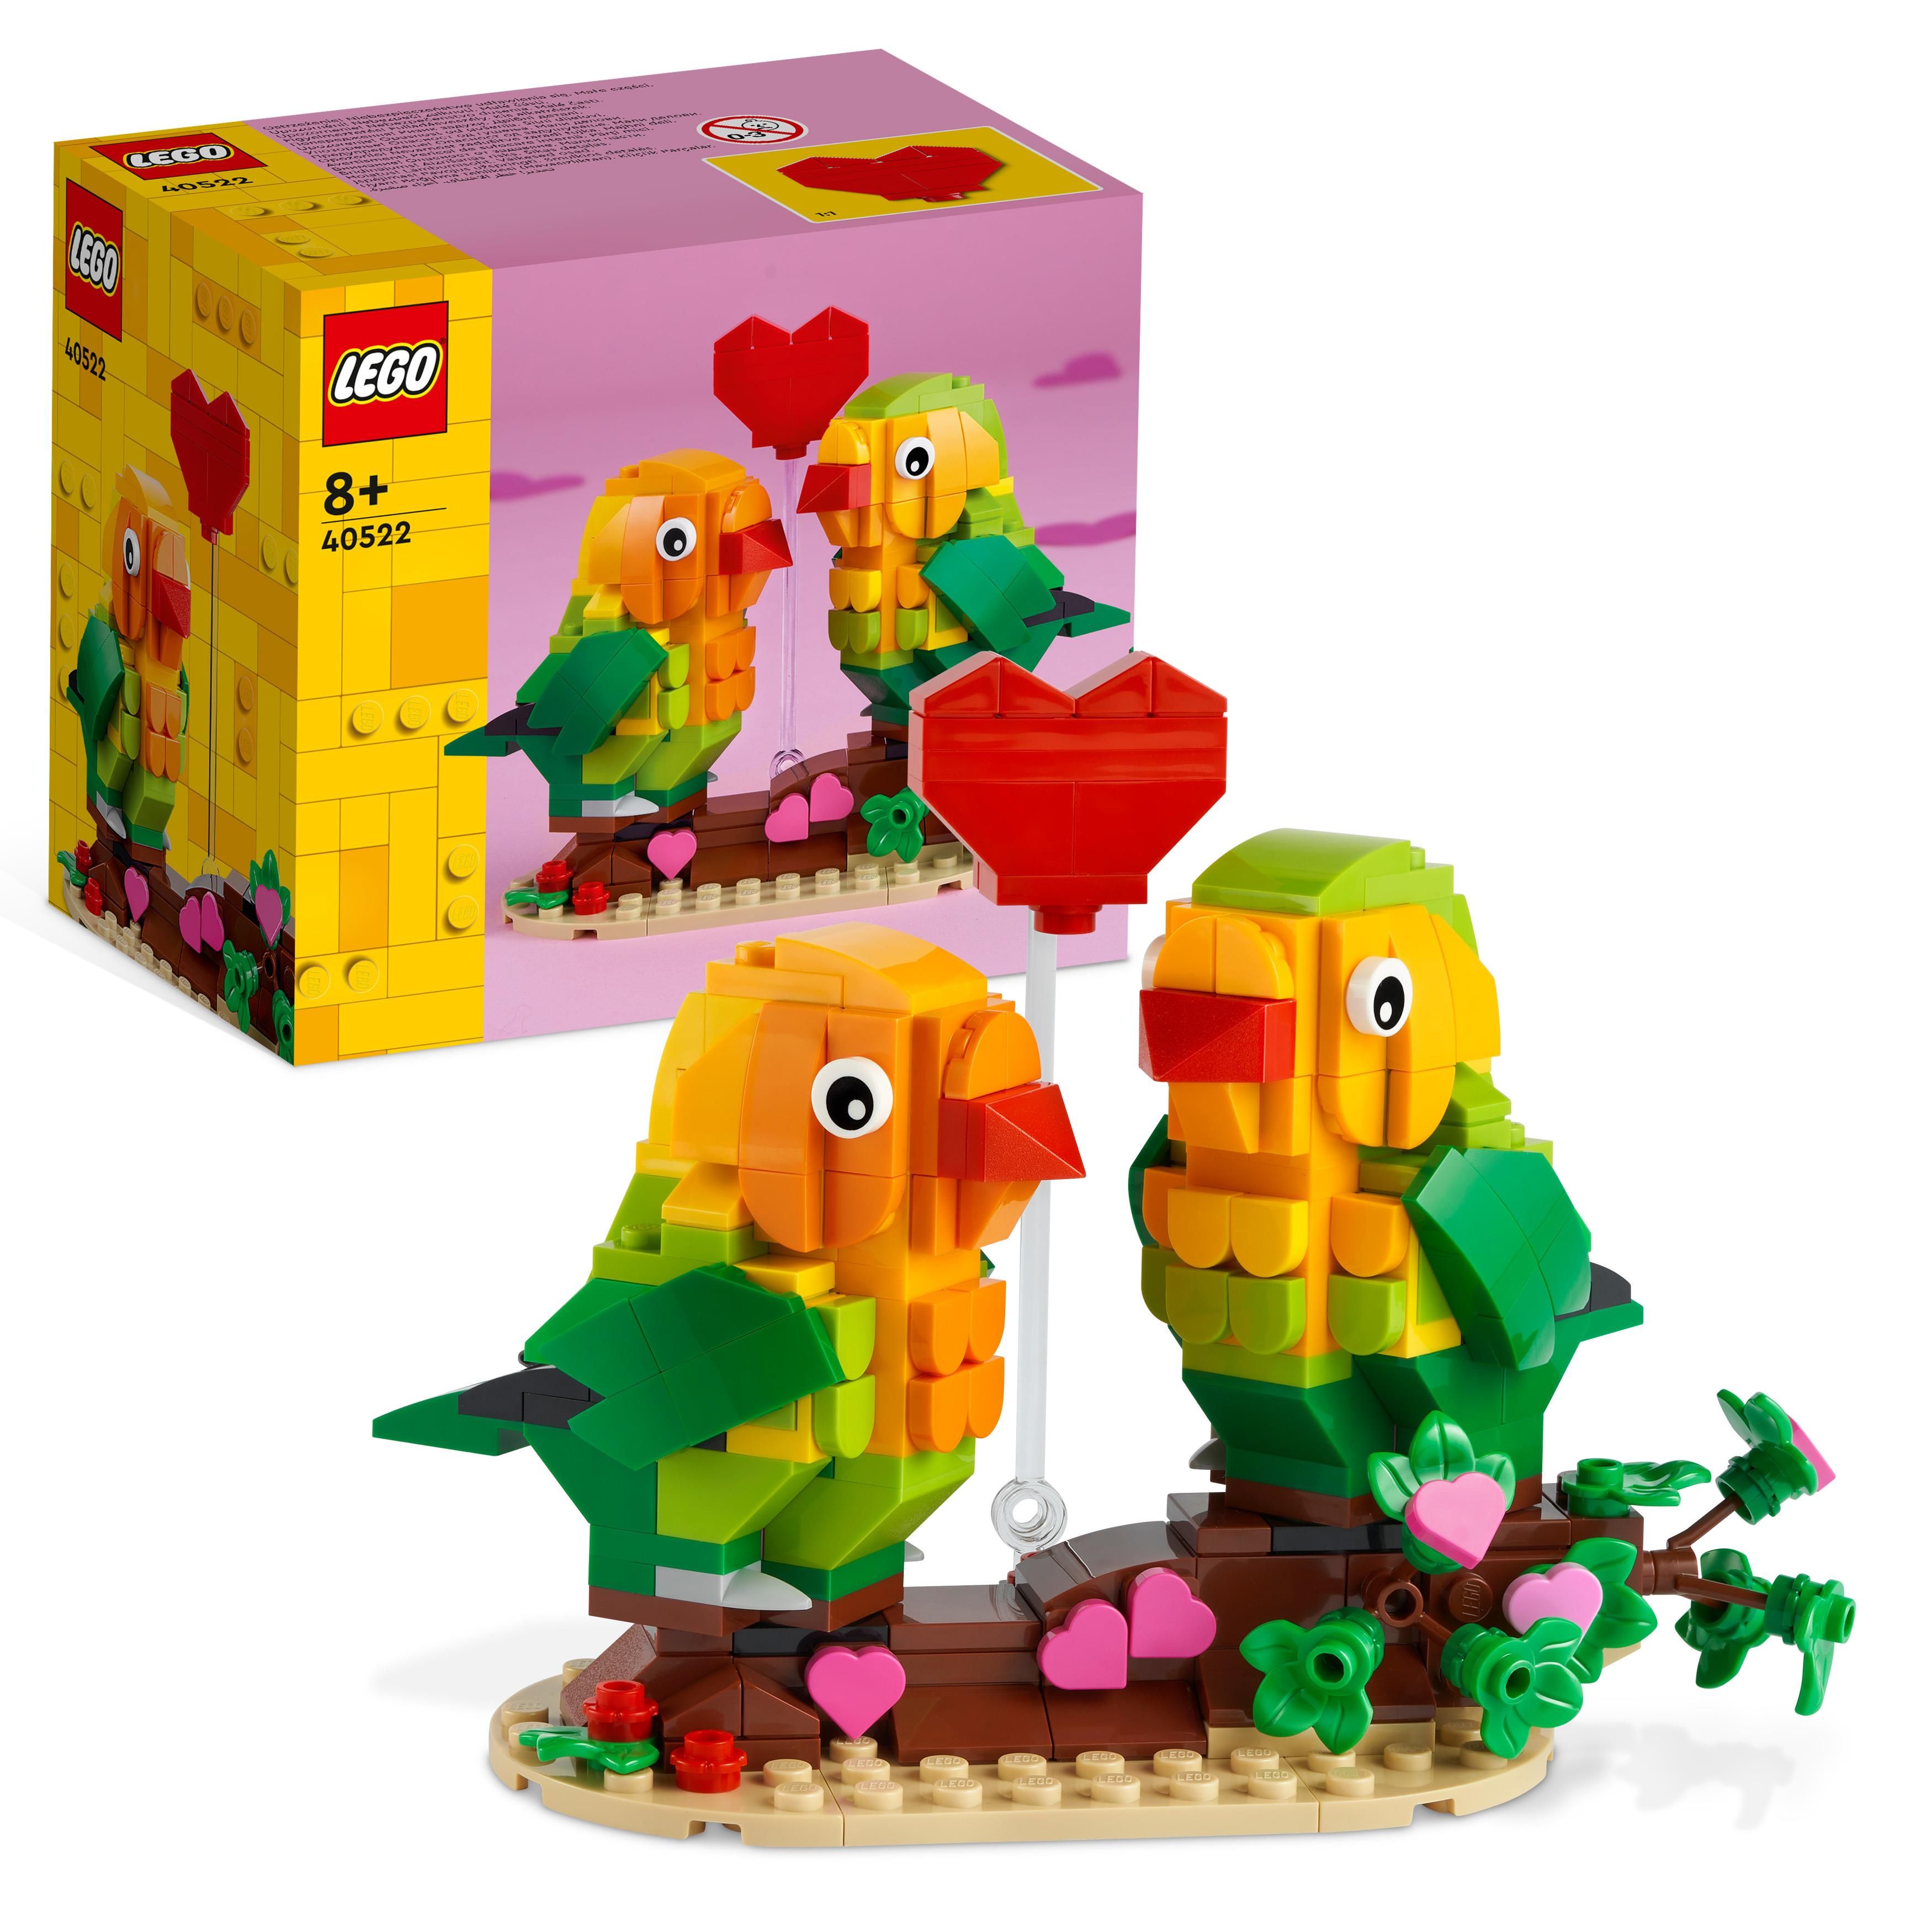 LEGO Piccioncini di San Valentino